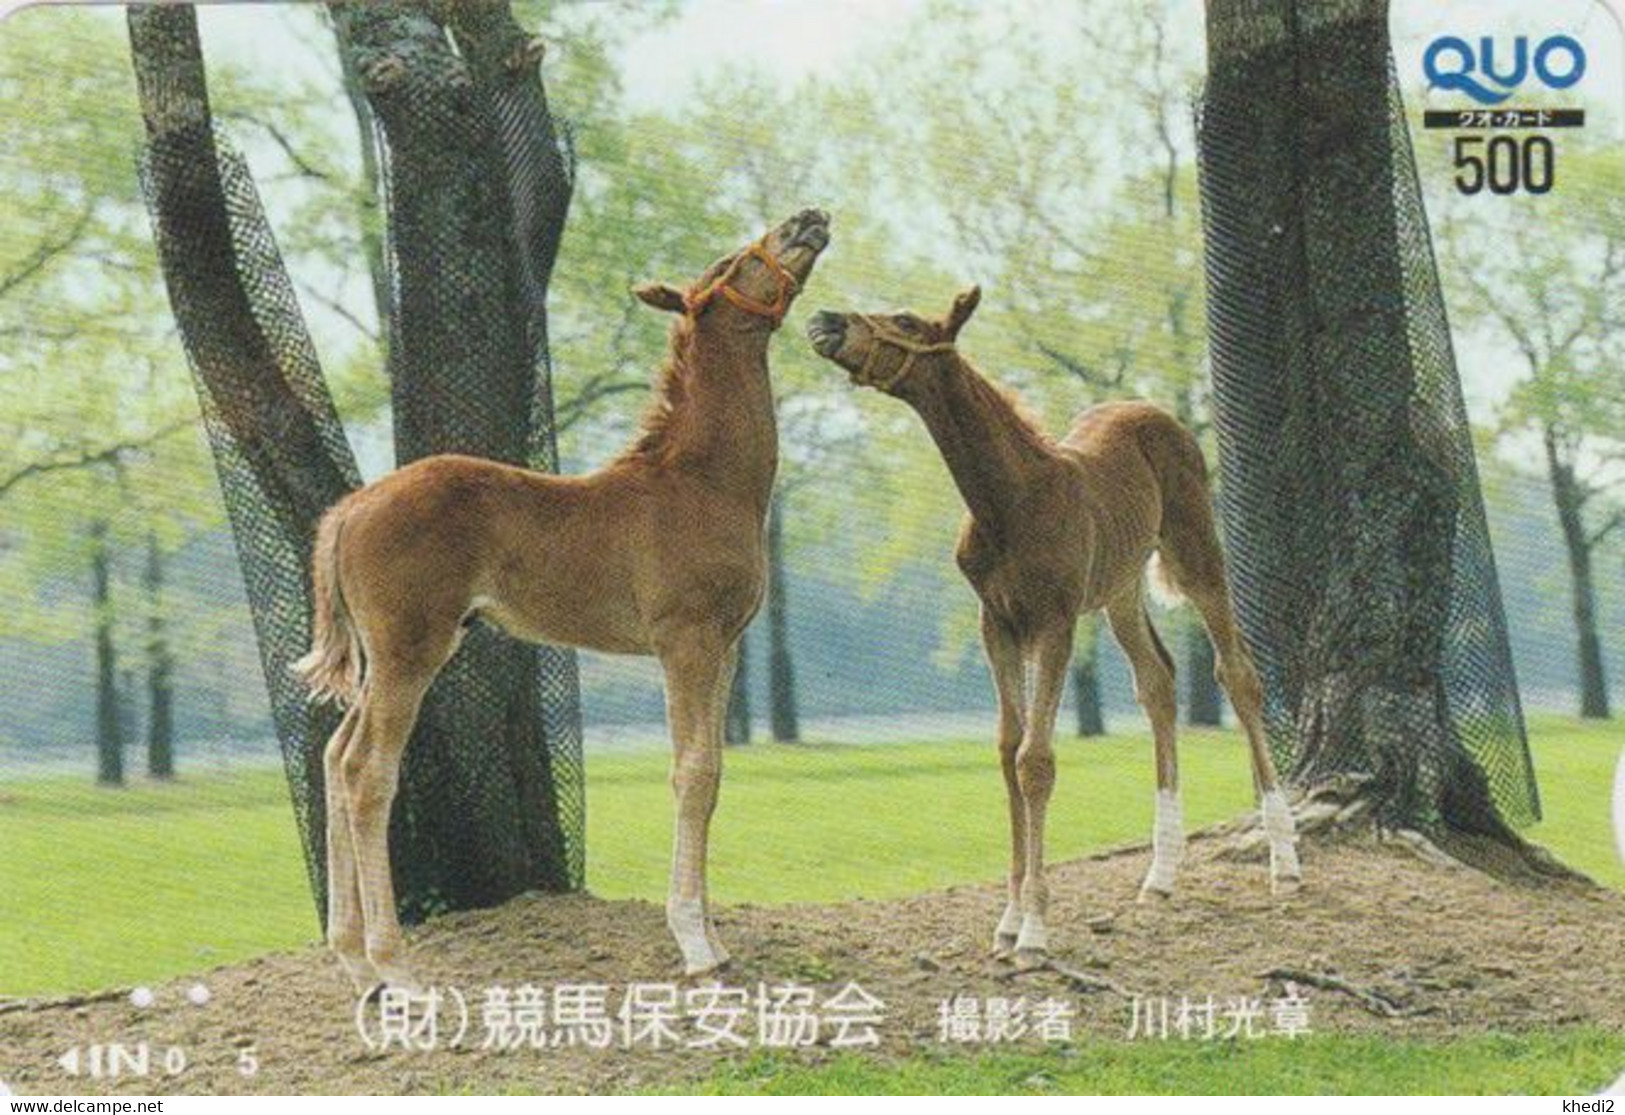 Carte Prépayée JAPON - ANIMAL - CHEVAL Chevaux / Poulain - HORSE JAPAN Prepaid Quo Card - PFERD - BE 412 - Cavalli